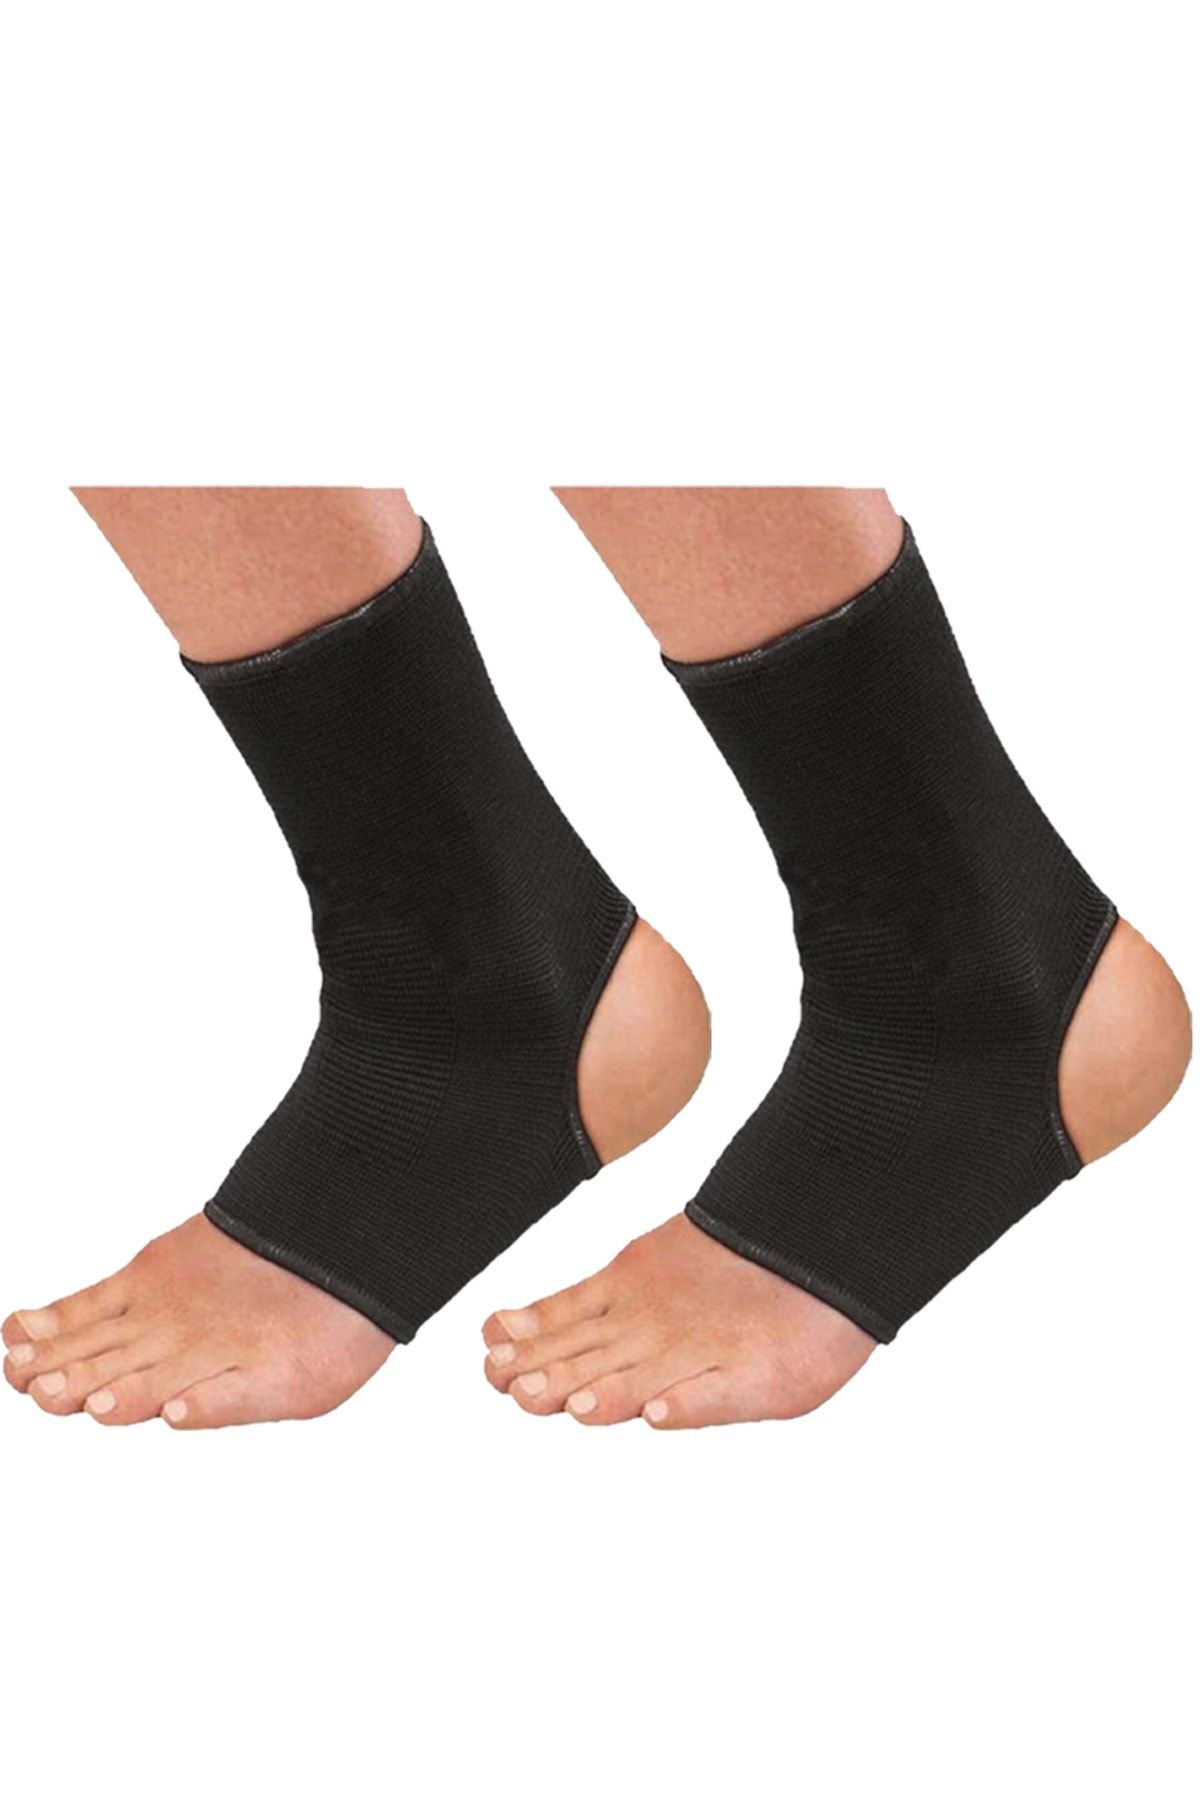 GAZELMANYA Kickboks Çorabı Boks Çorabı Muay Thai Çorabı Ayak Bilek Koruyucu Ayak Bilekliği Ayak Bandajı